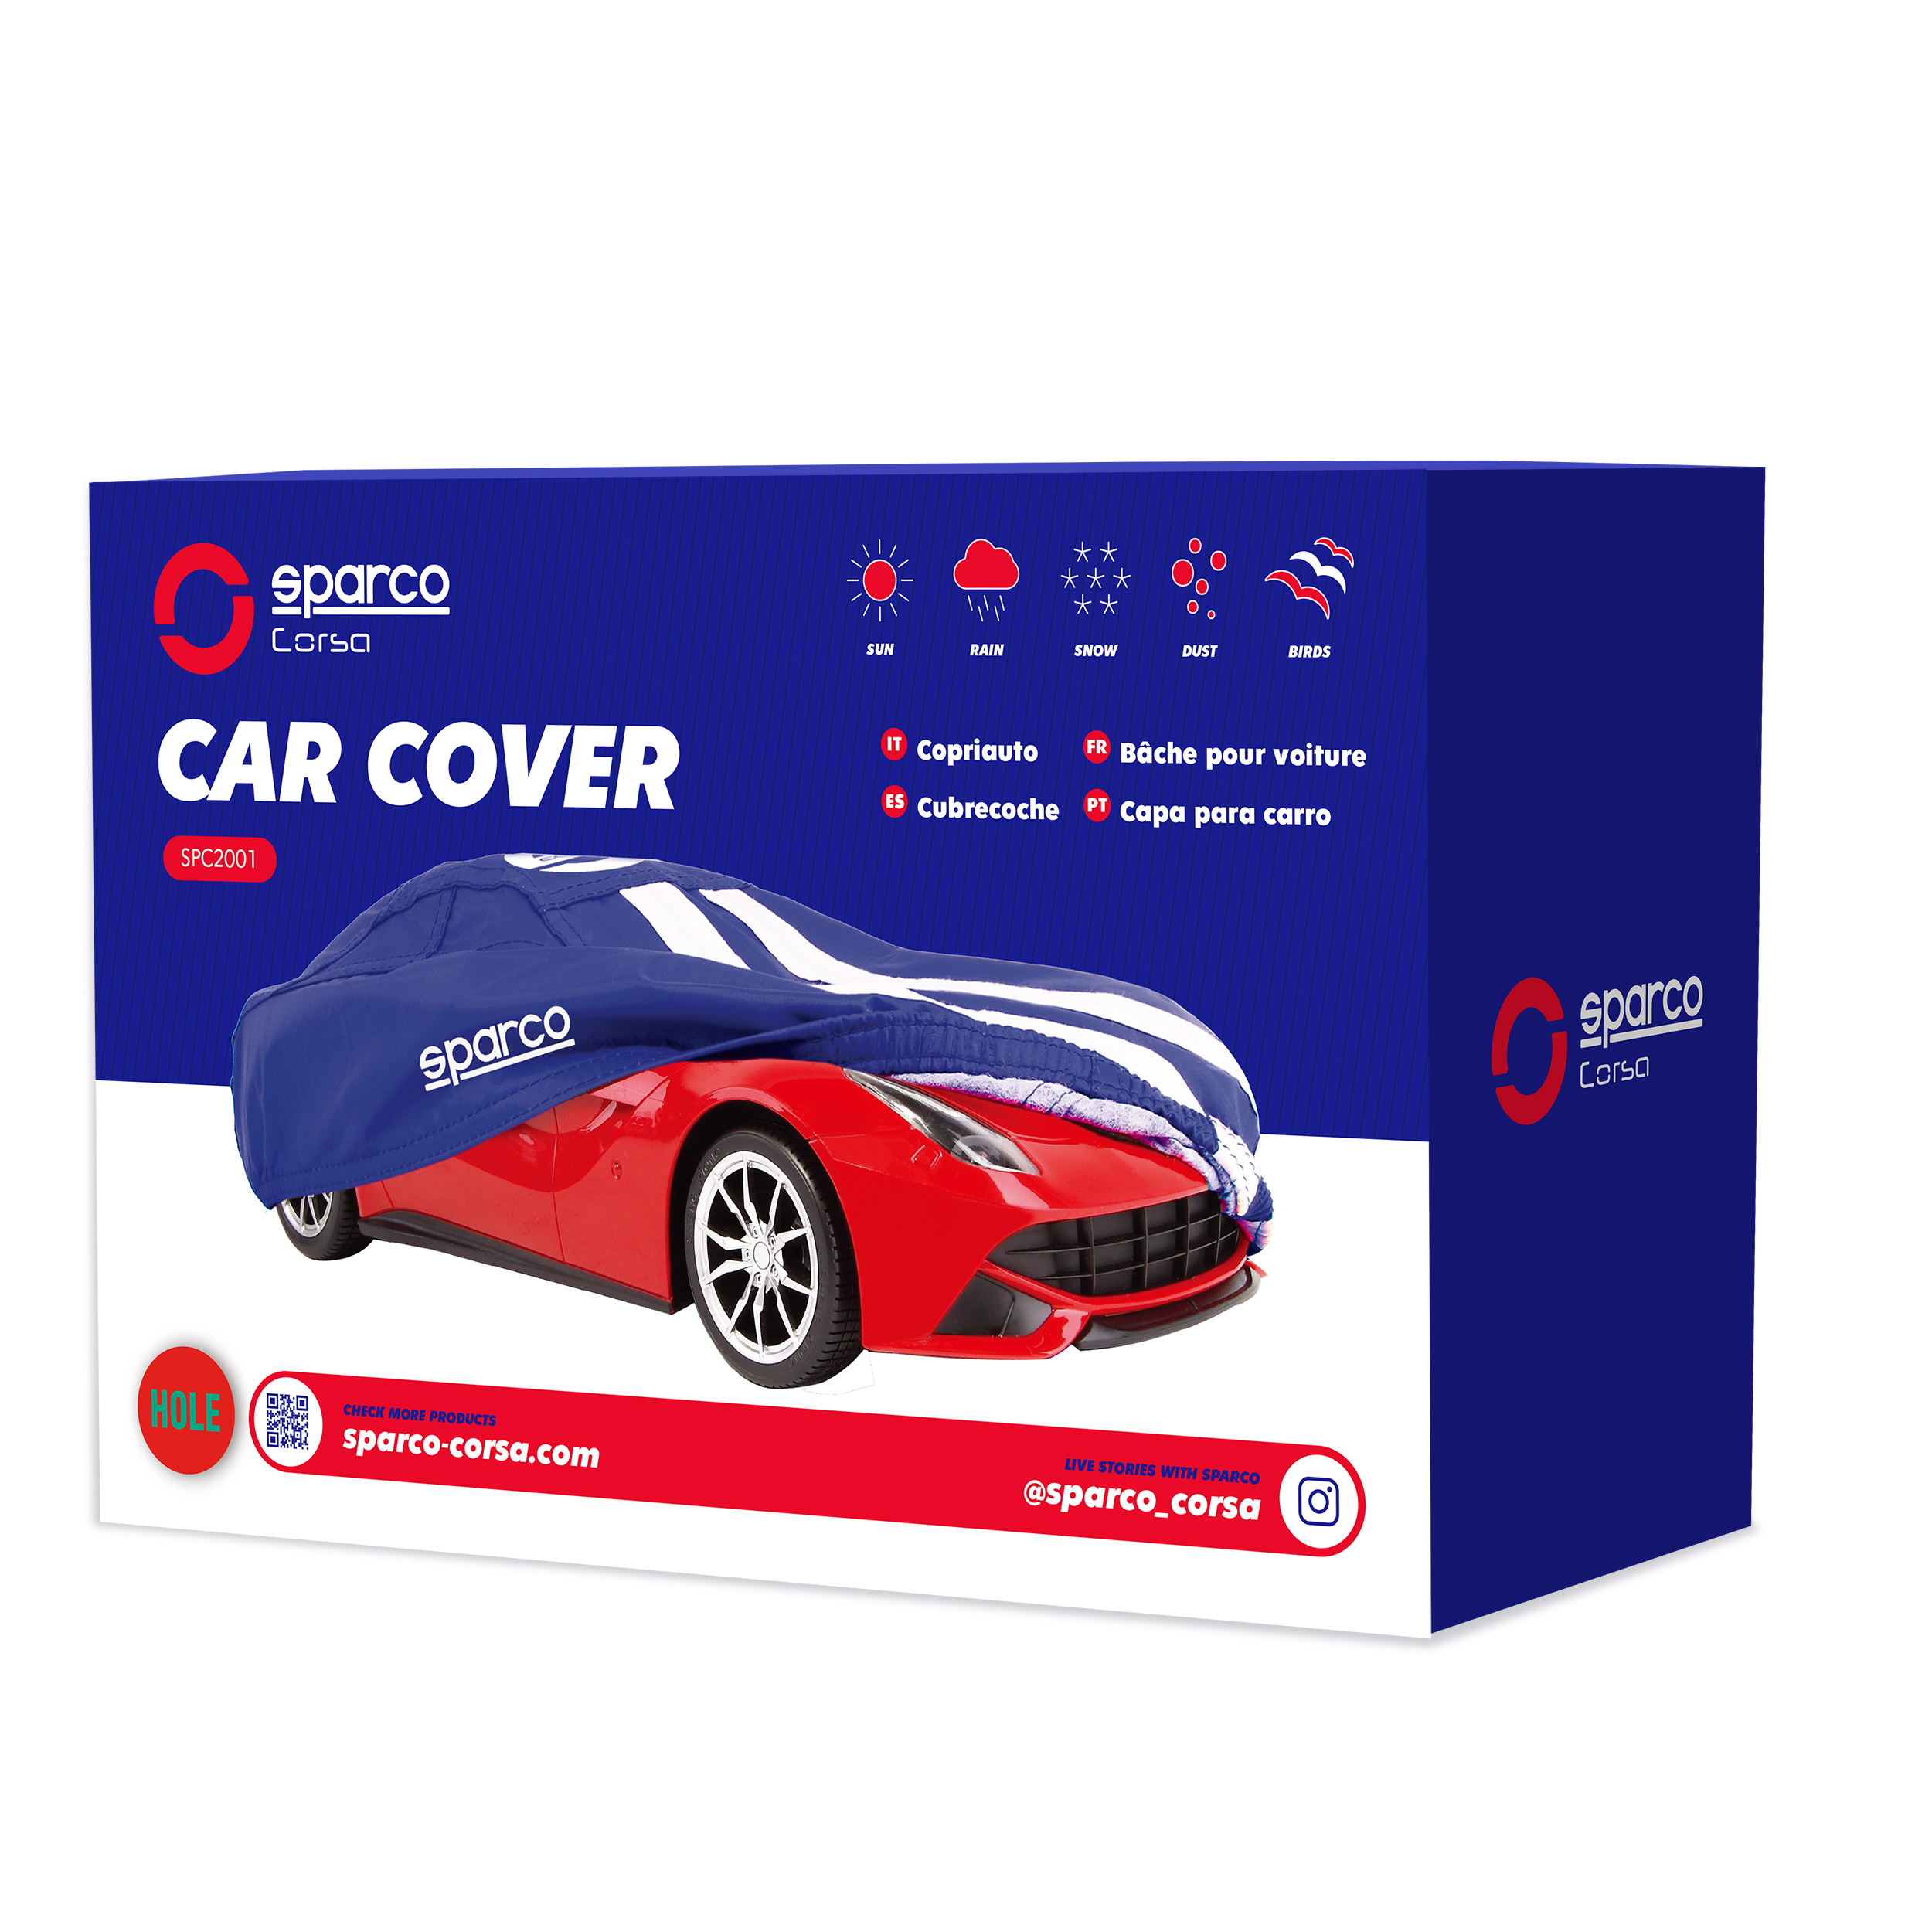 Car Cover - Sparco Corsa